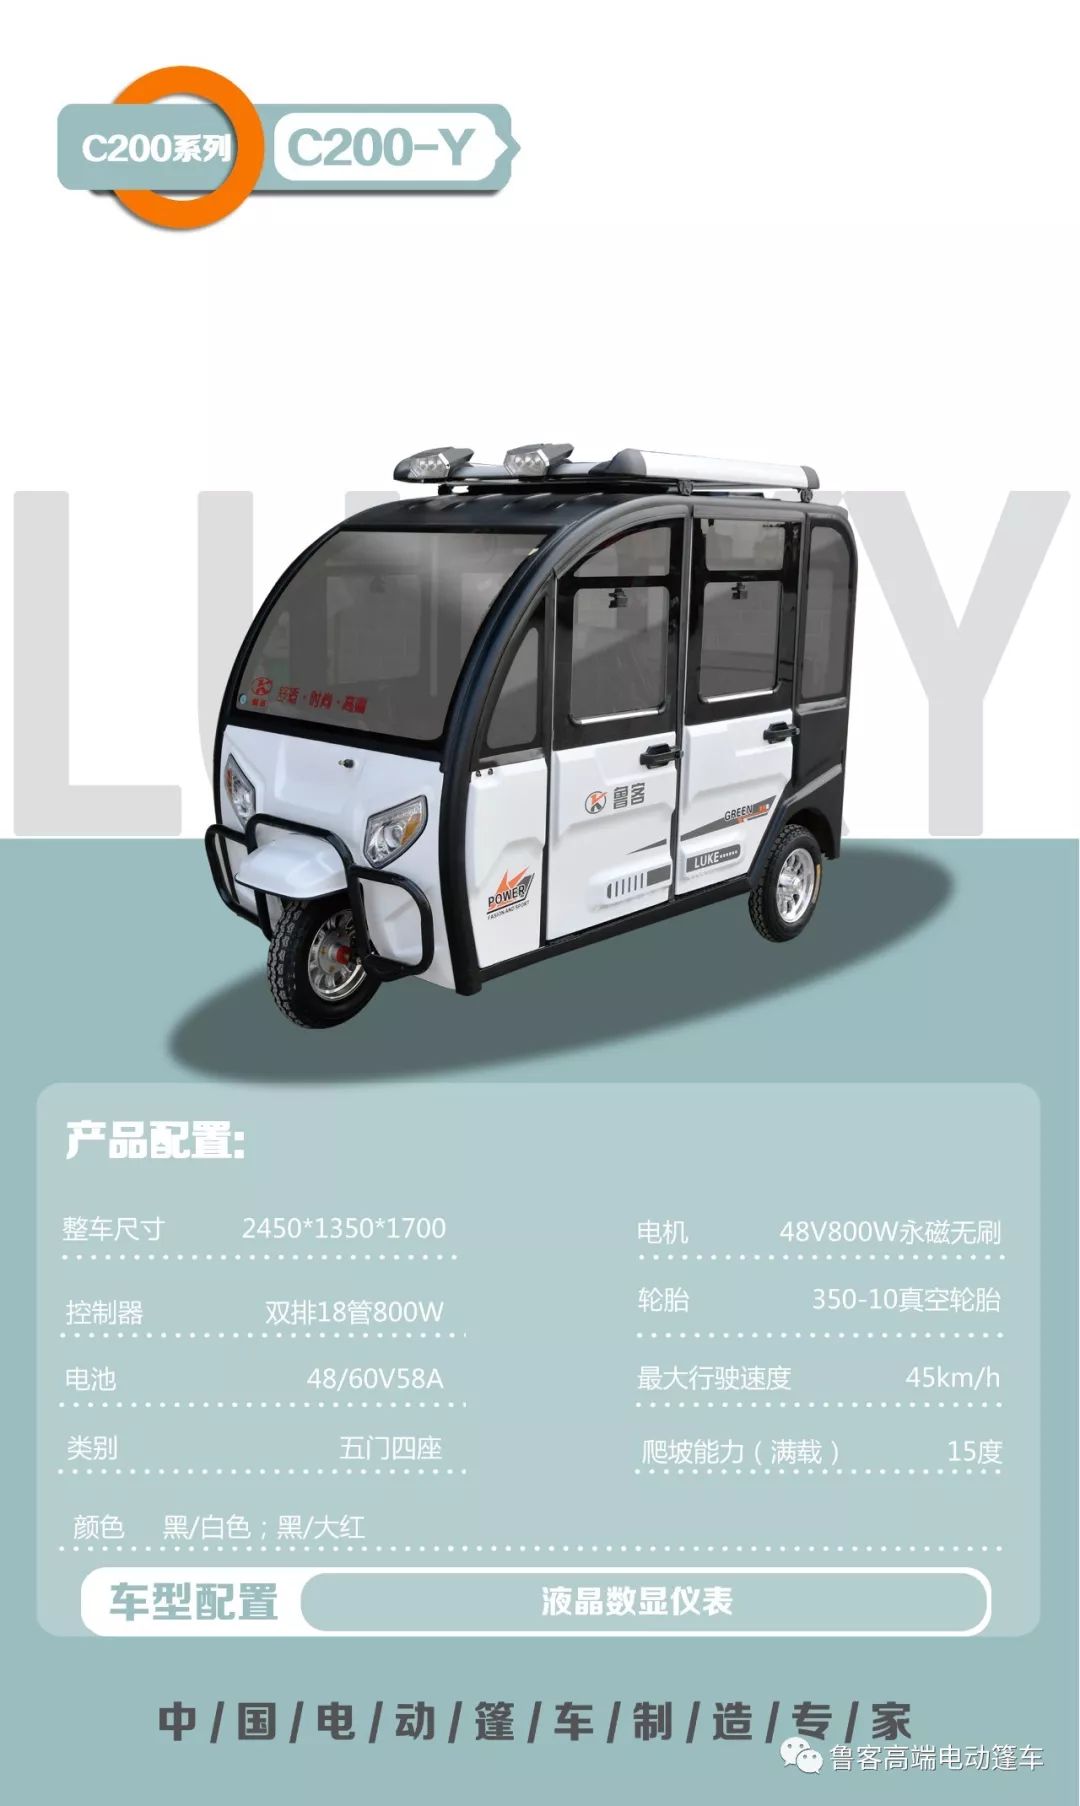 鲁客电动三轮篷车产品介绍2020年3月